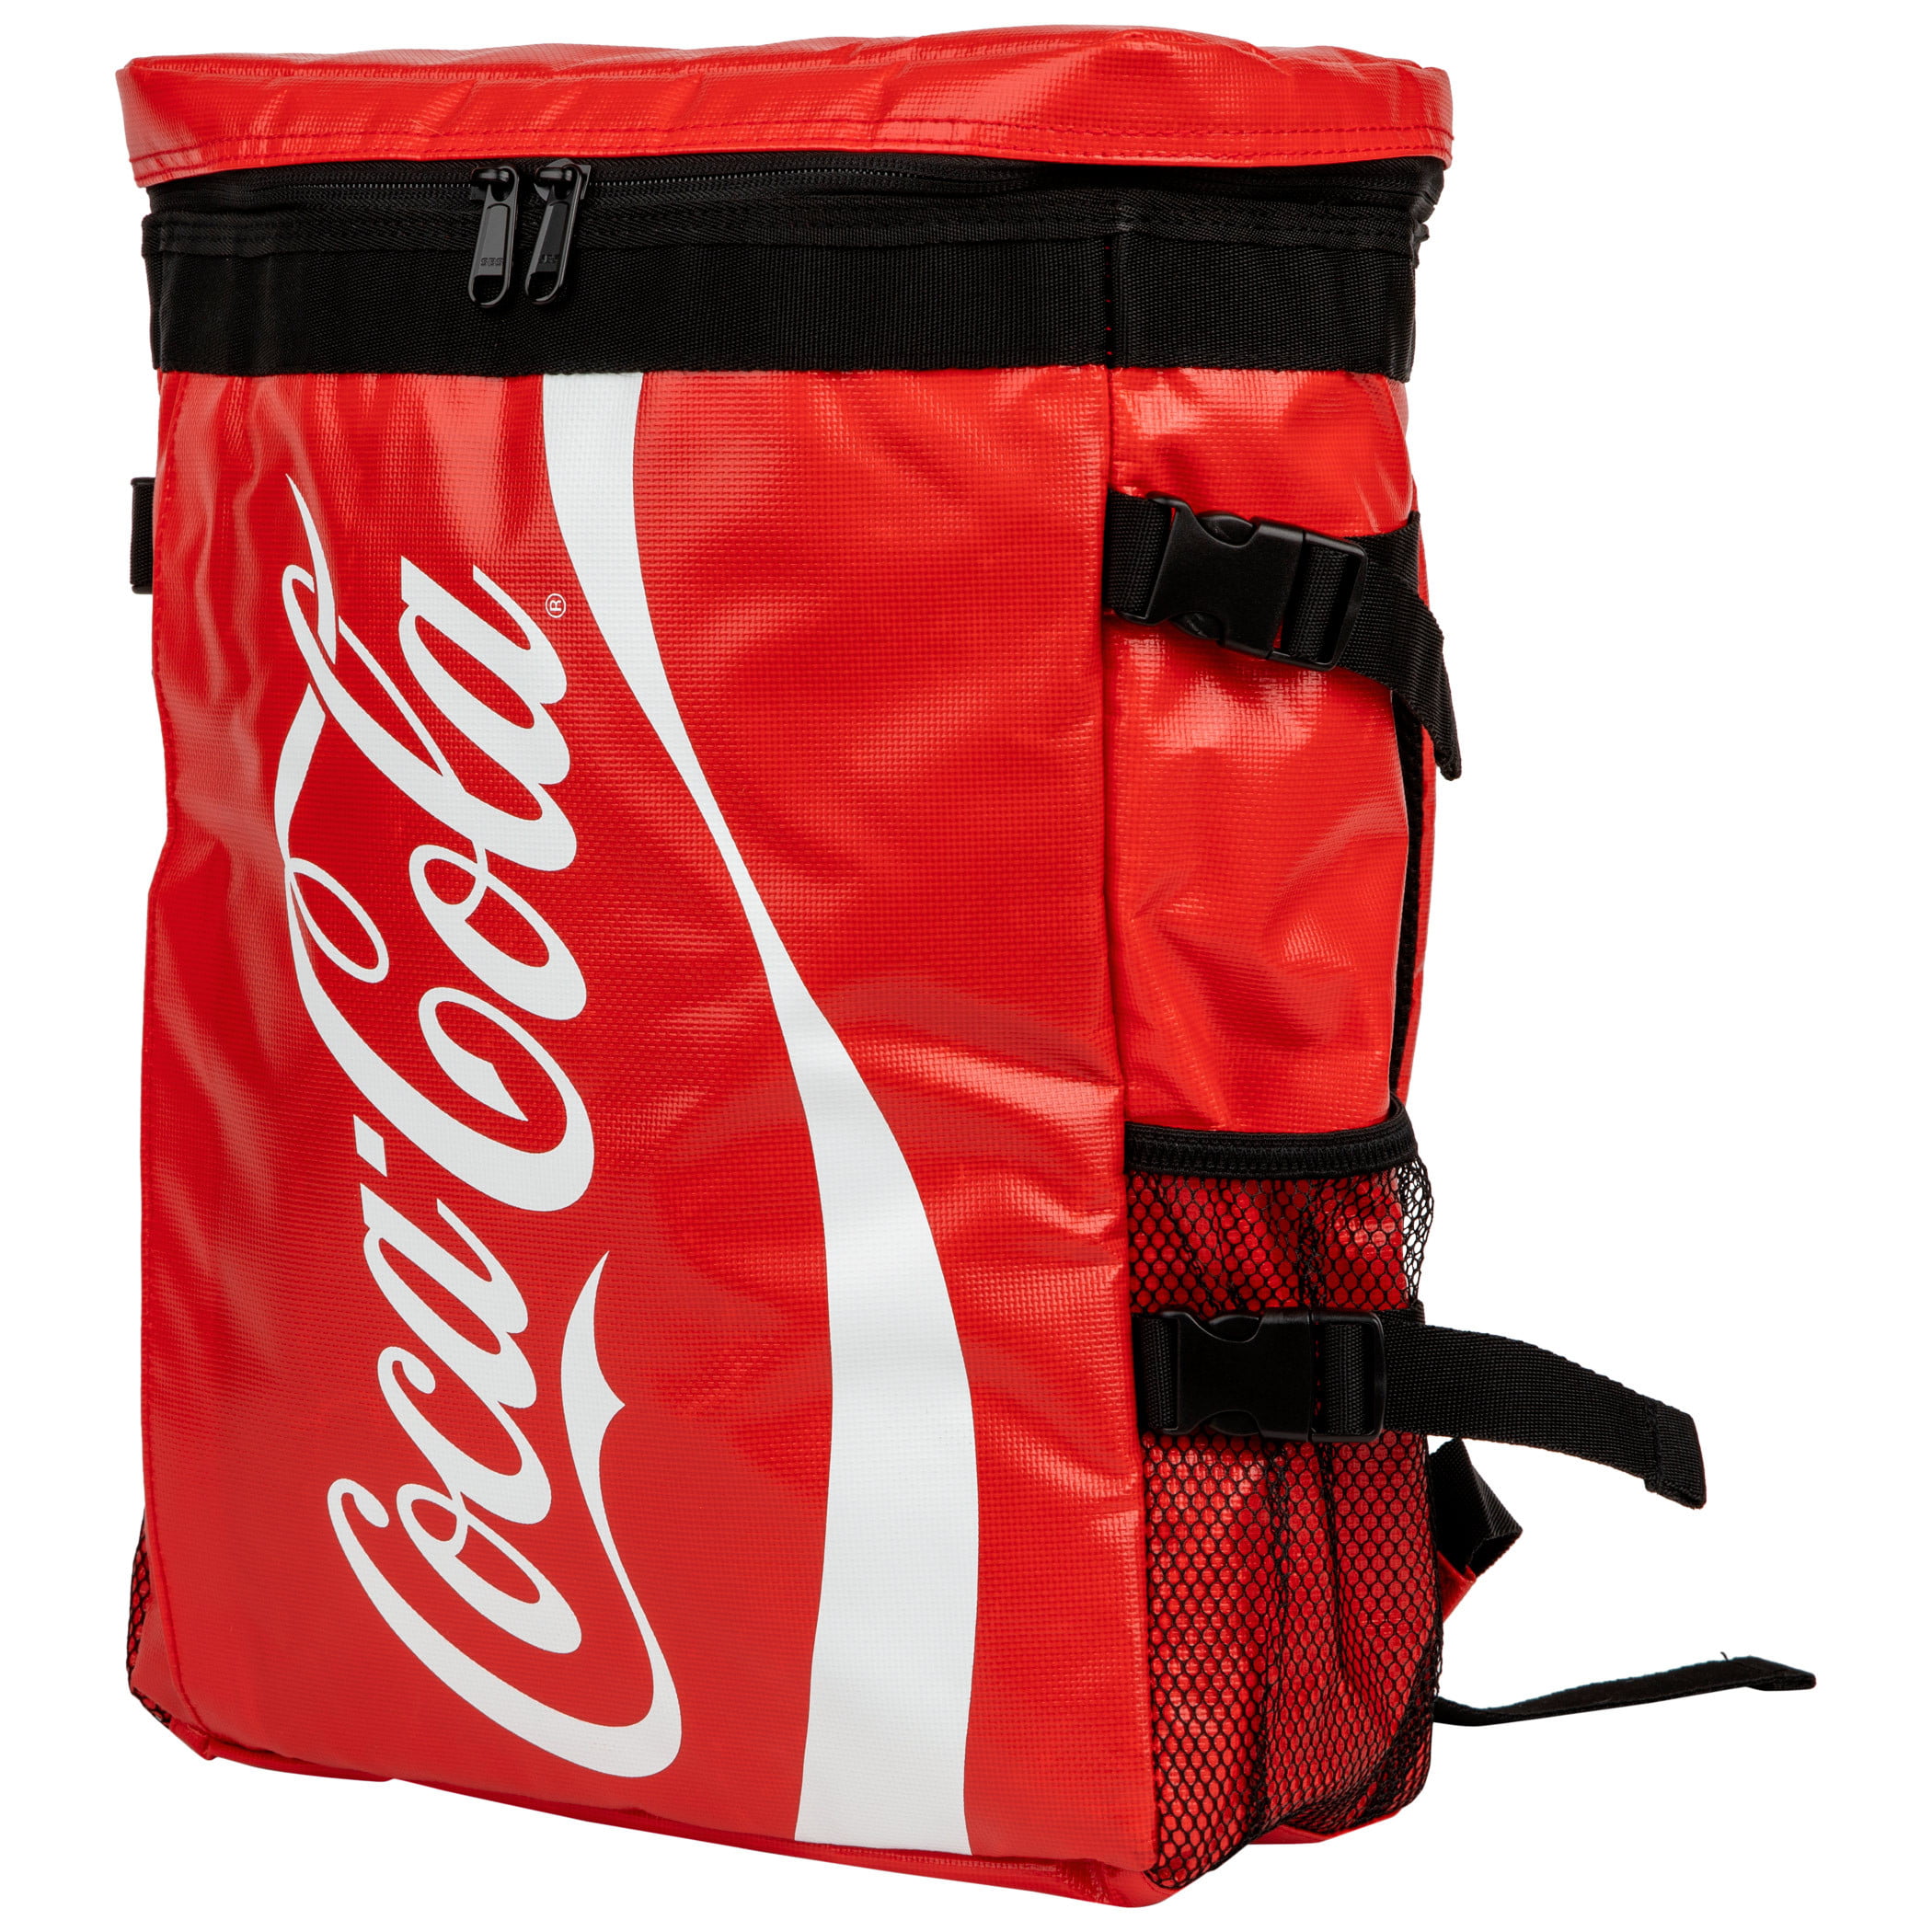 Coca-Cola Backpack Cooler - Walmart.com